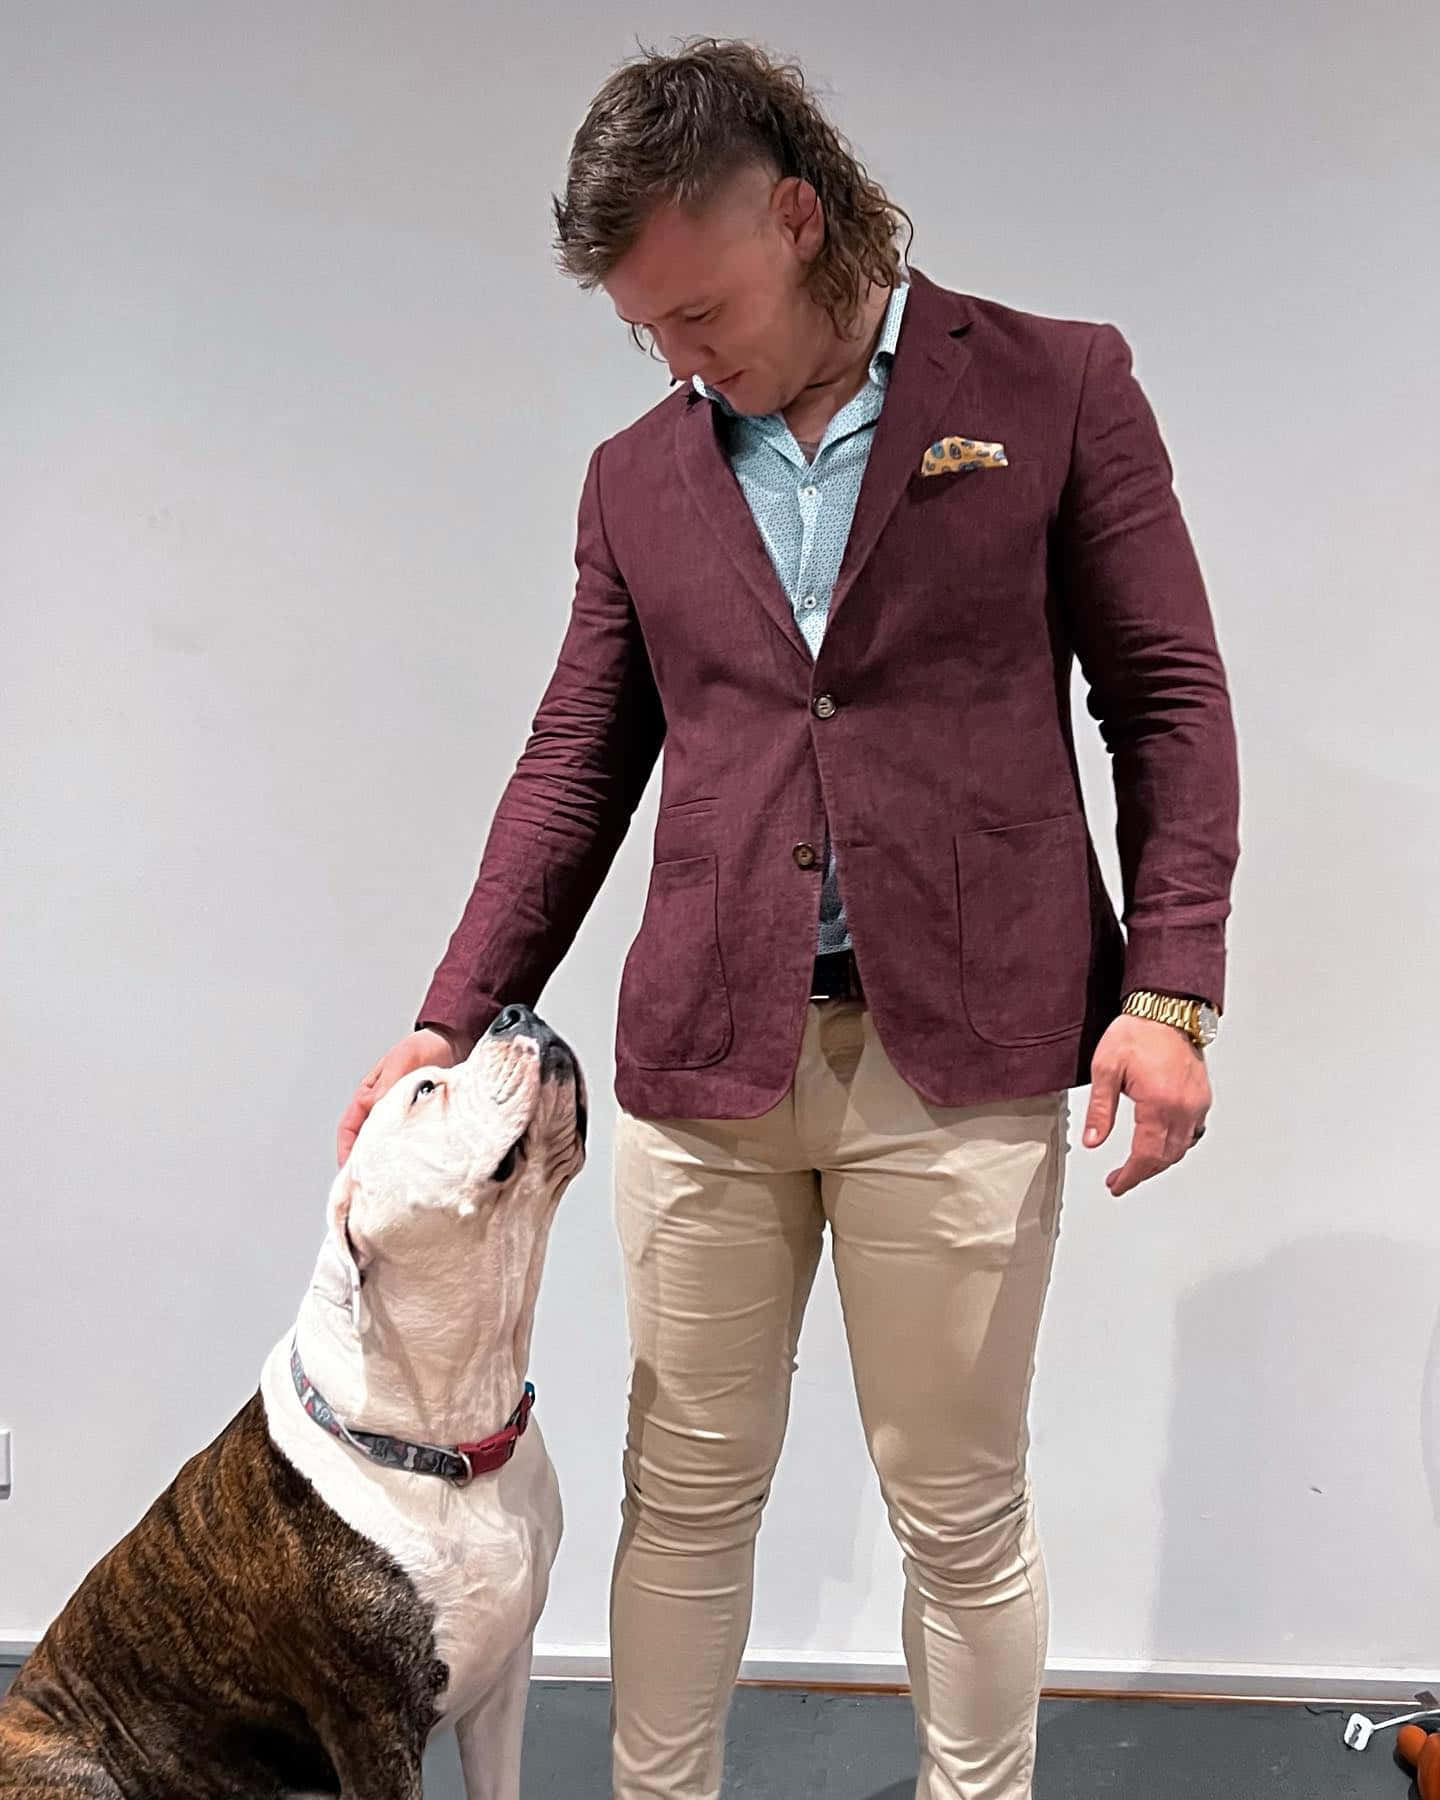 Jimmycrute In Einem Anzug, Während Er Seinen Hund Streichelt. Wallpaper